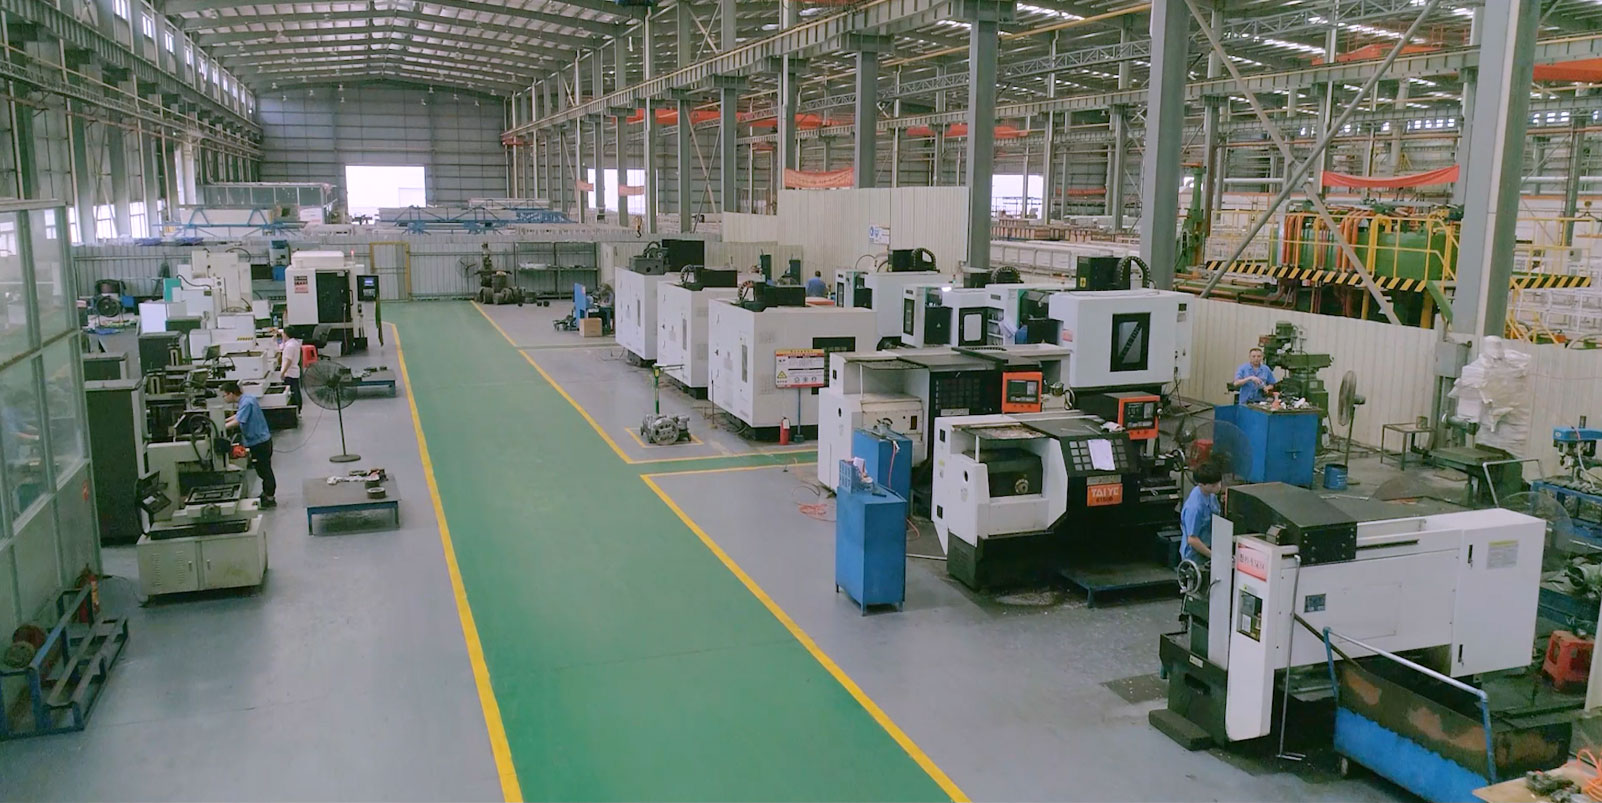 新大明铝业工业材模具厂及2500吨挤压机正式投产运行